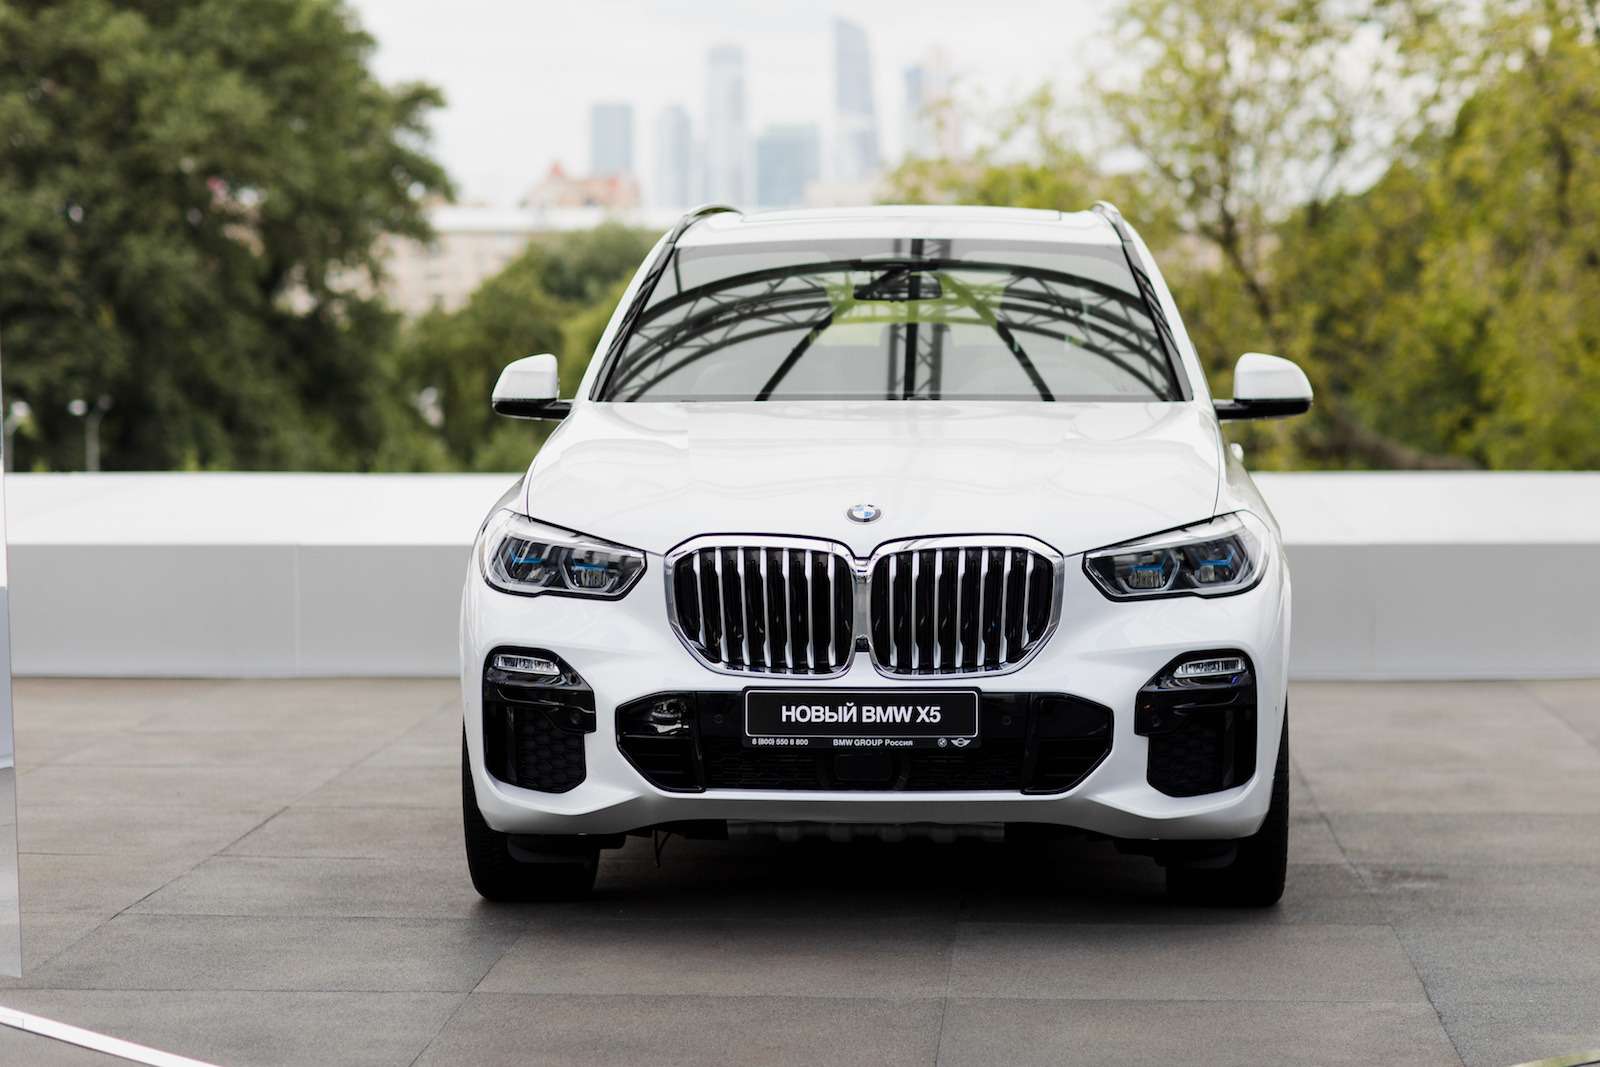 Абсолютно новый BMW X5 всплыл в Москве. Задолго до официальной премьеры! — фото 889831